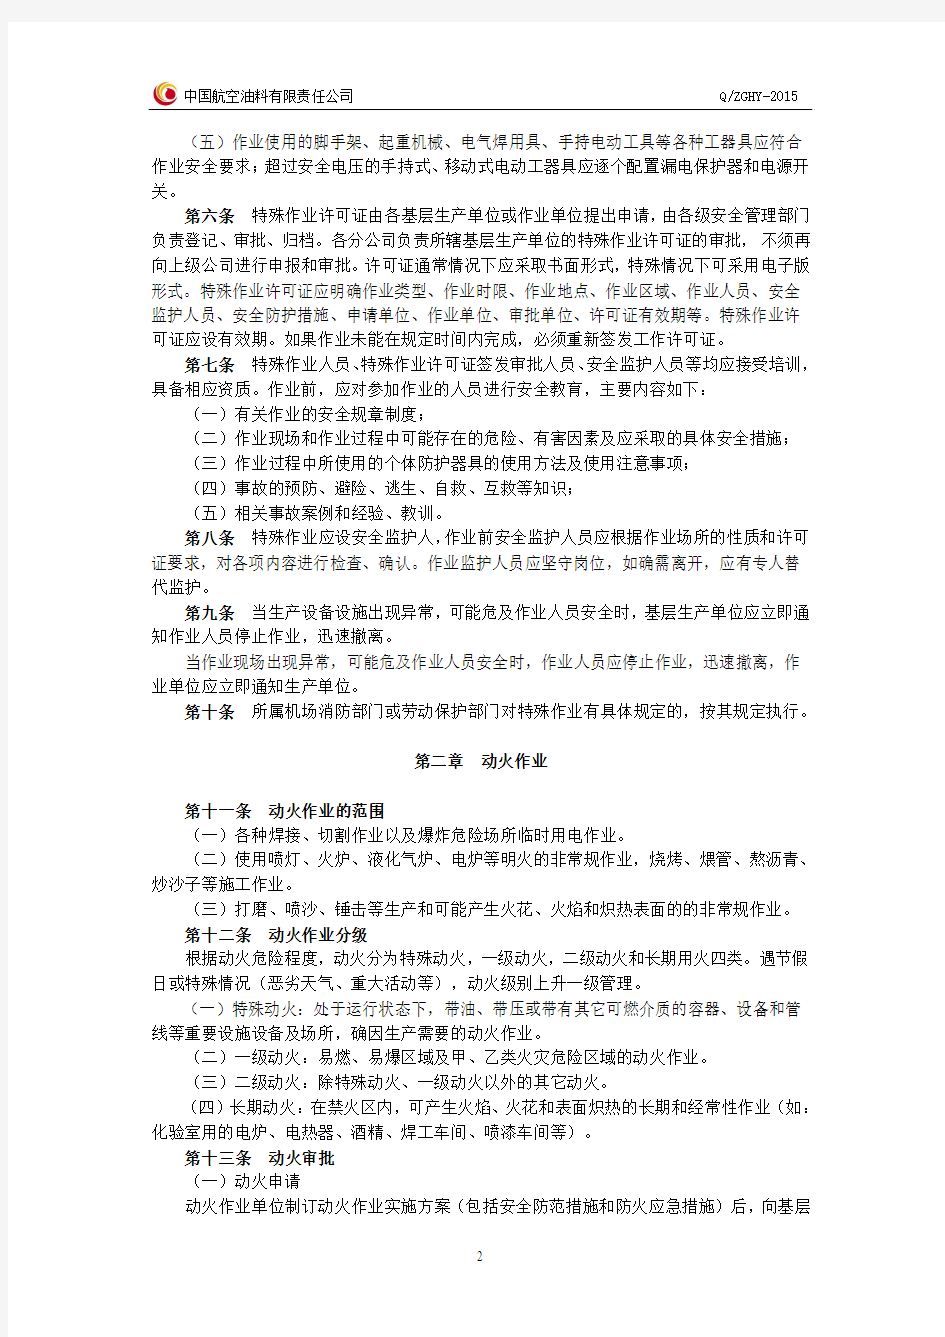 中国航空油料有限责任公司特殊作业许可管理制度(2015年修订).